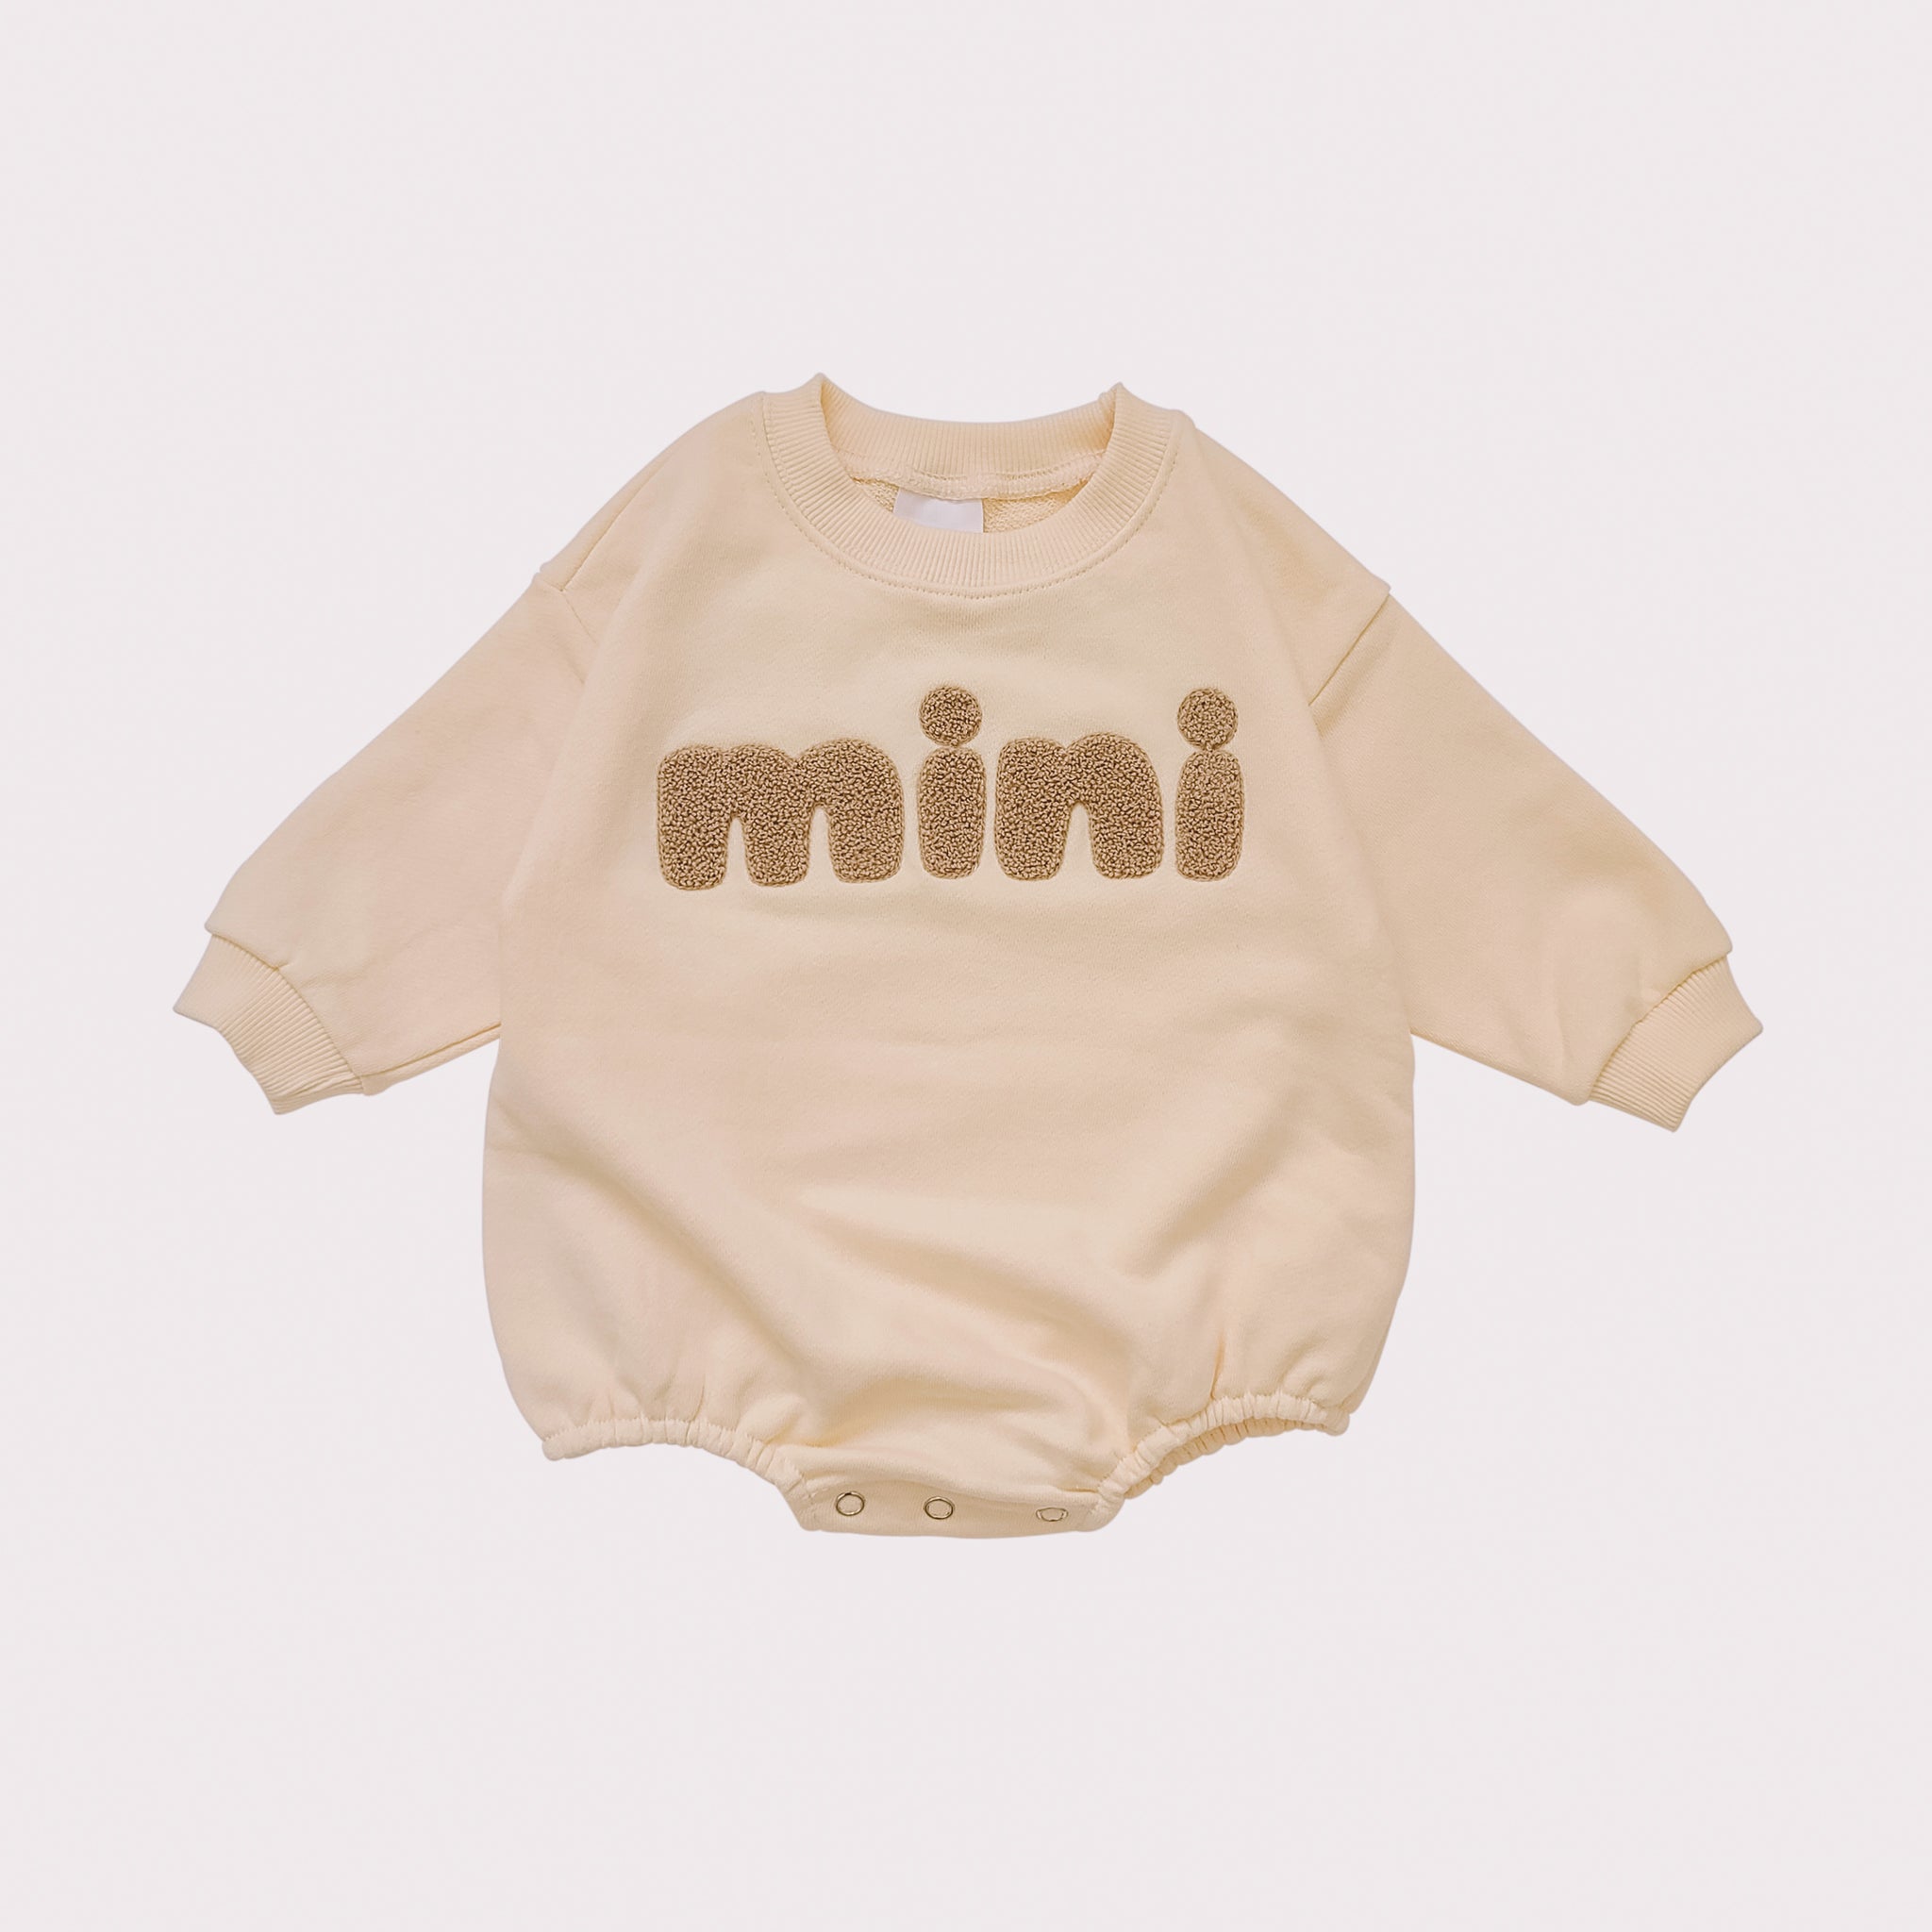 Baby Mini Sweatshirt Romper (0-18m) - Cream - AT NOON STORE